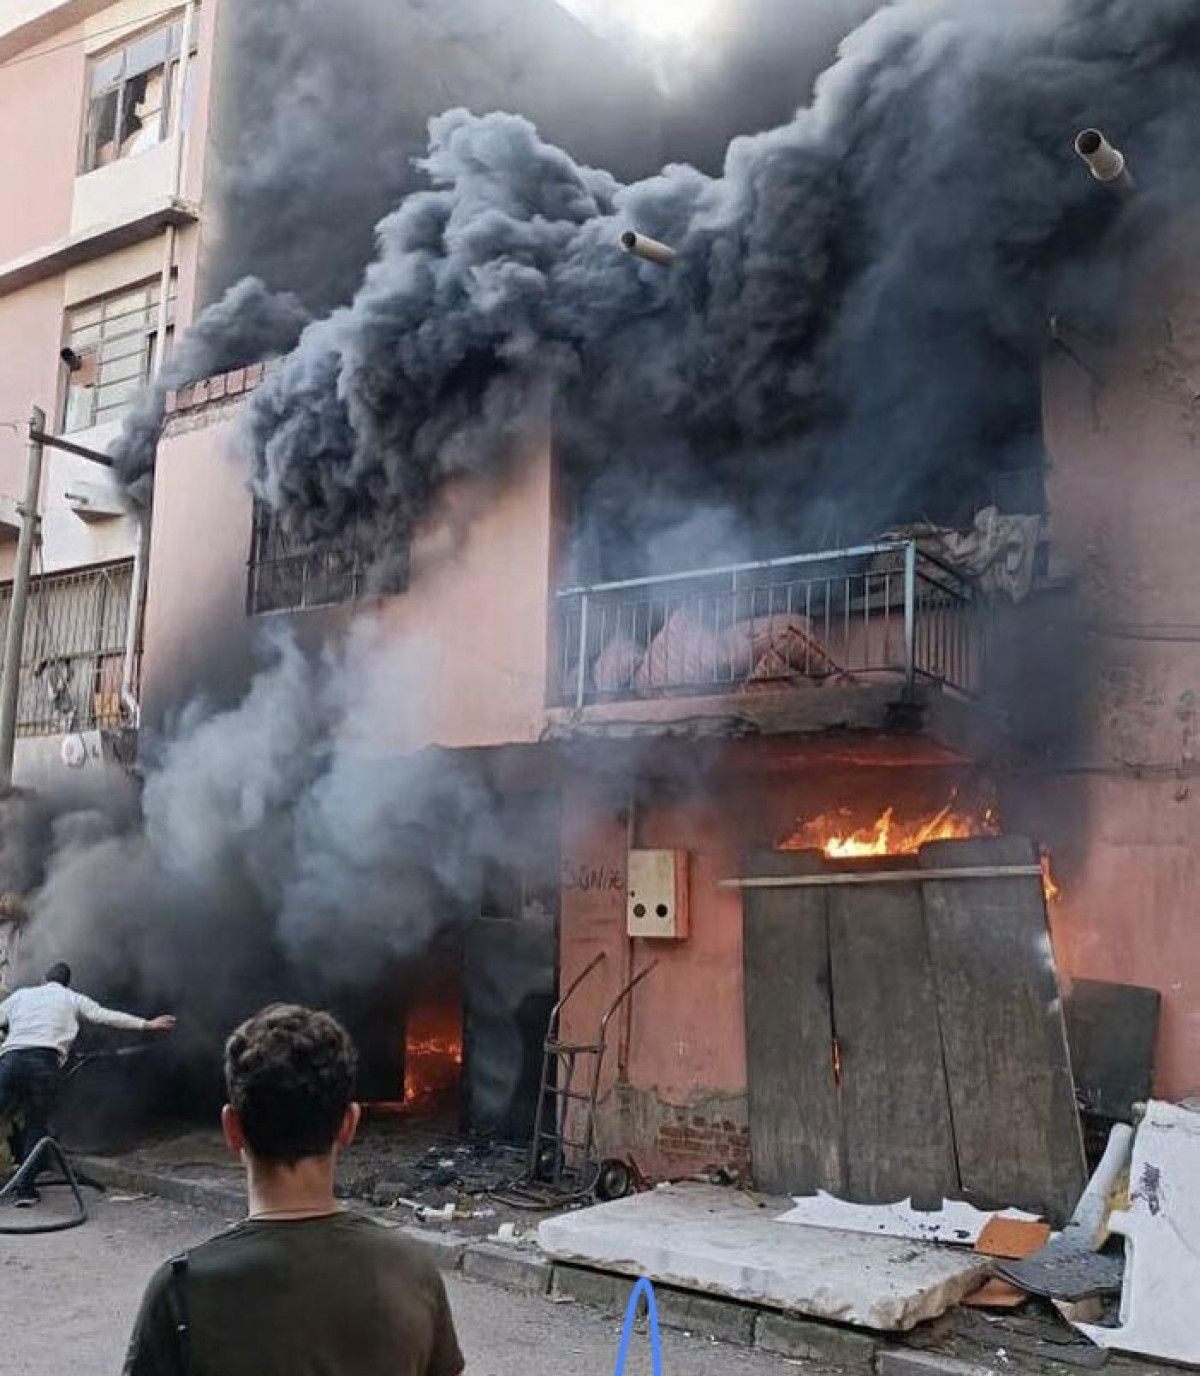 İzmir de sünger atölyesinde yangın çıktı #1